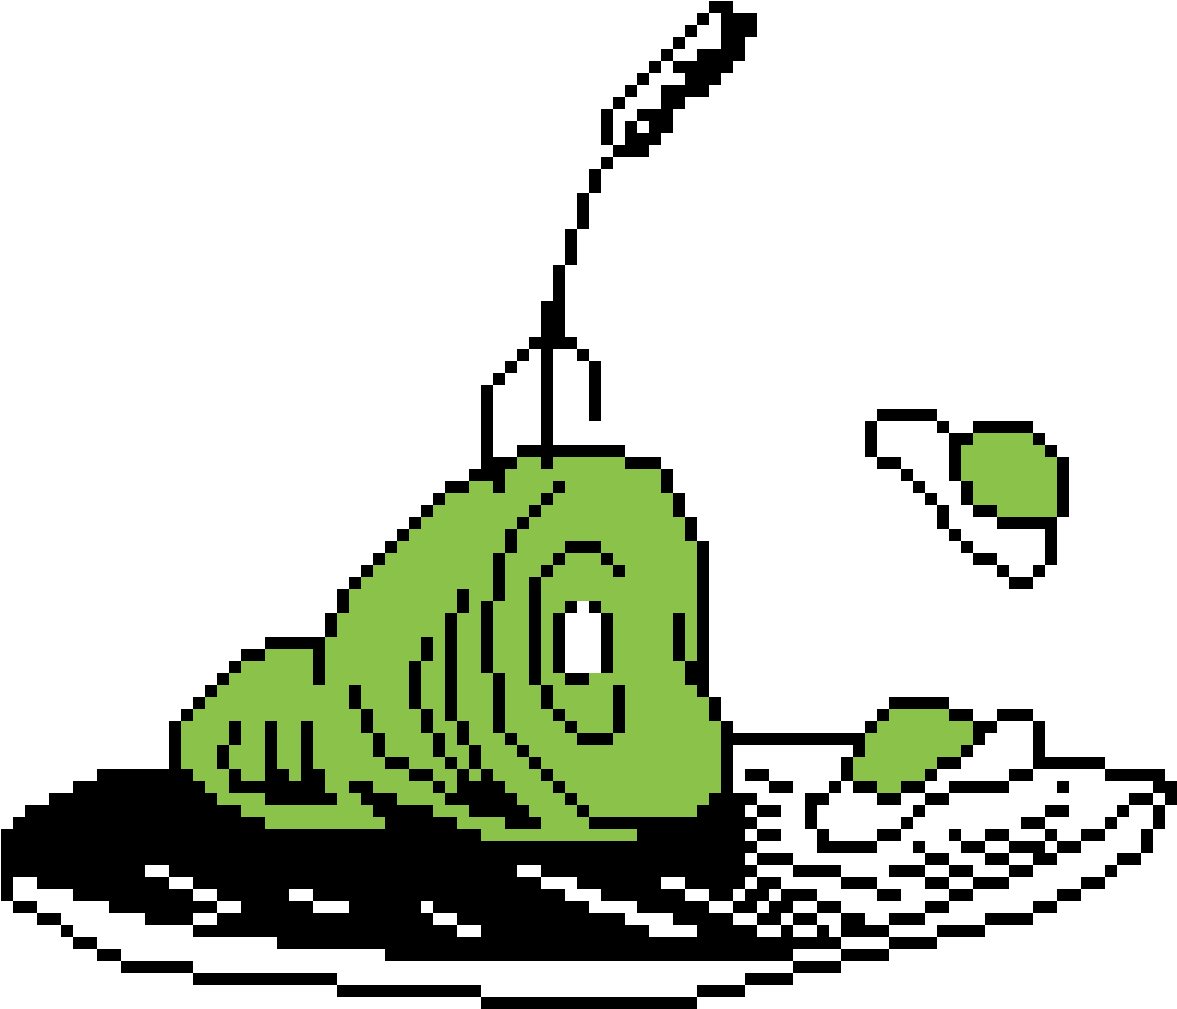 A Cartoon Of A Green Snail